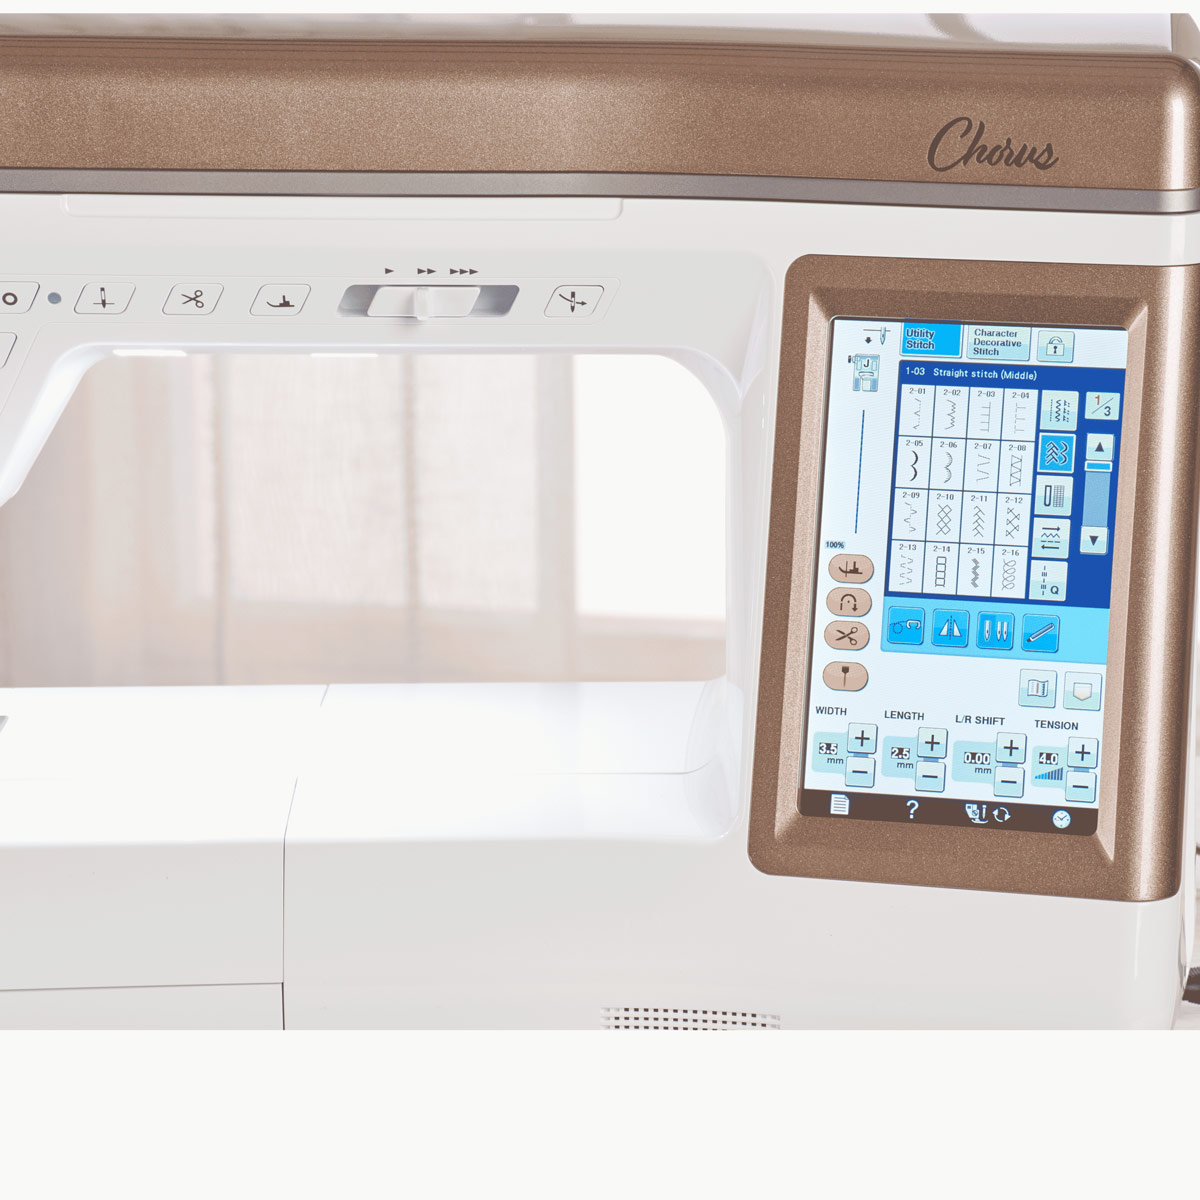 Baby Lock Chorus Sewing & Quilting Machine - 98612081661